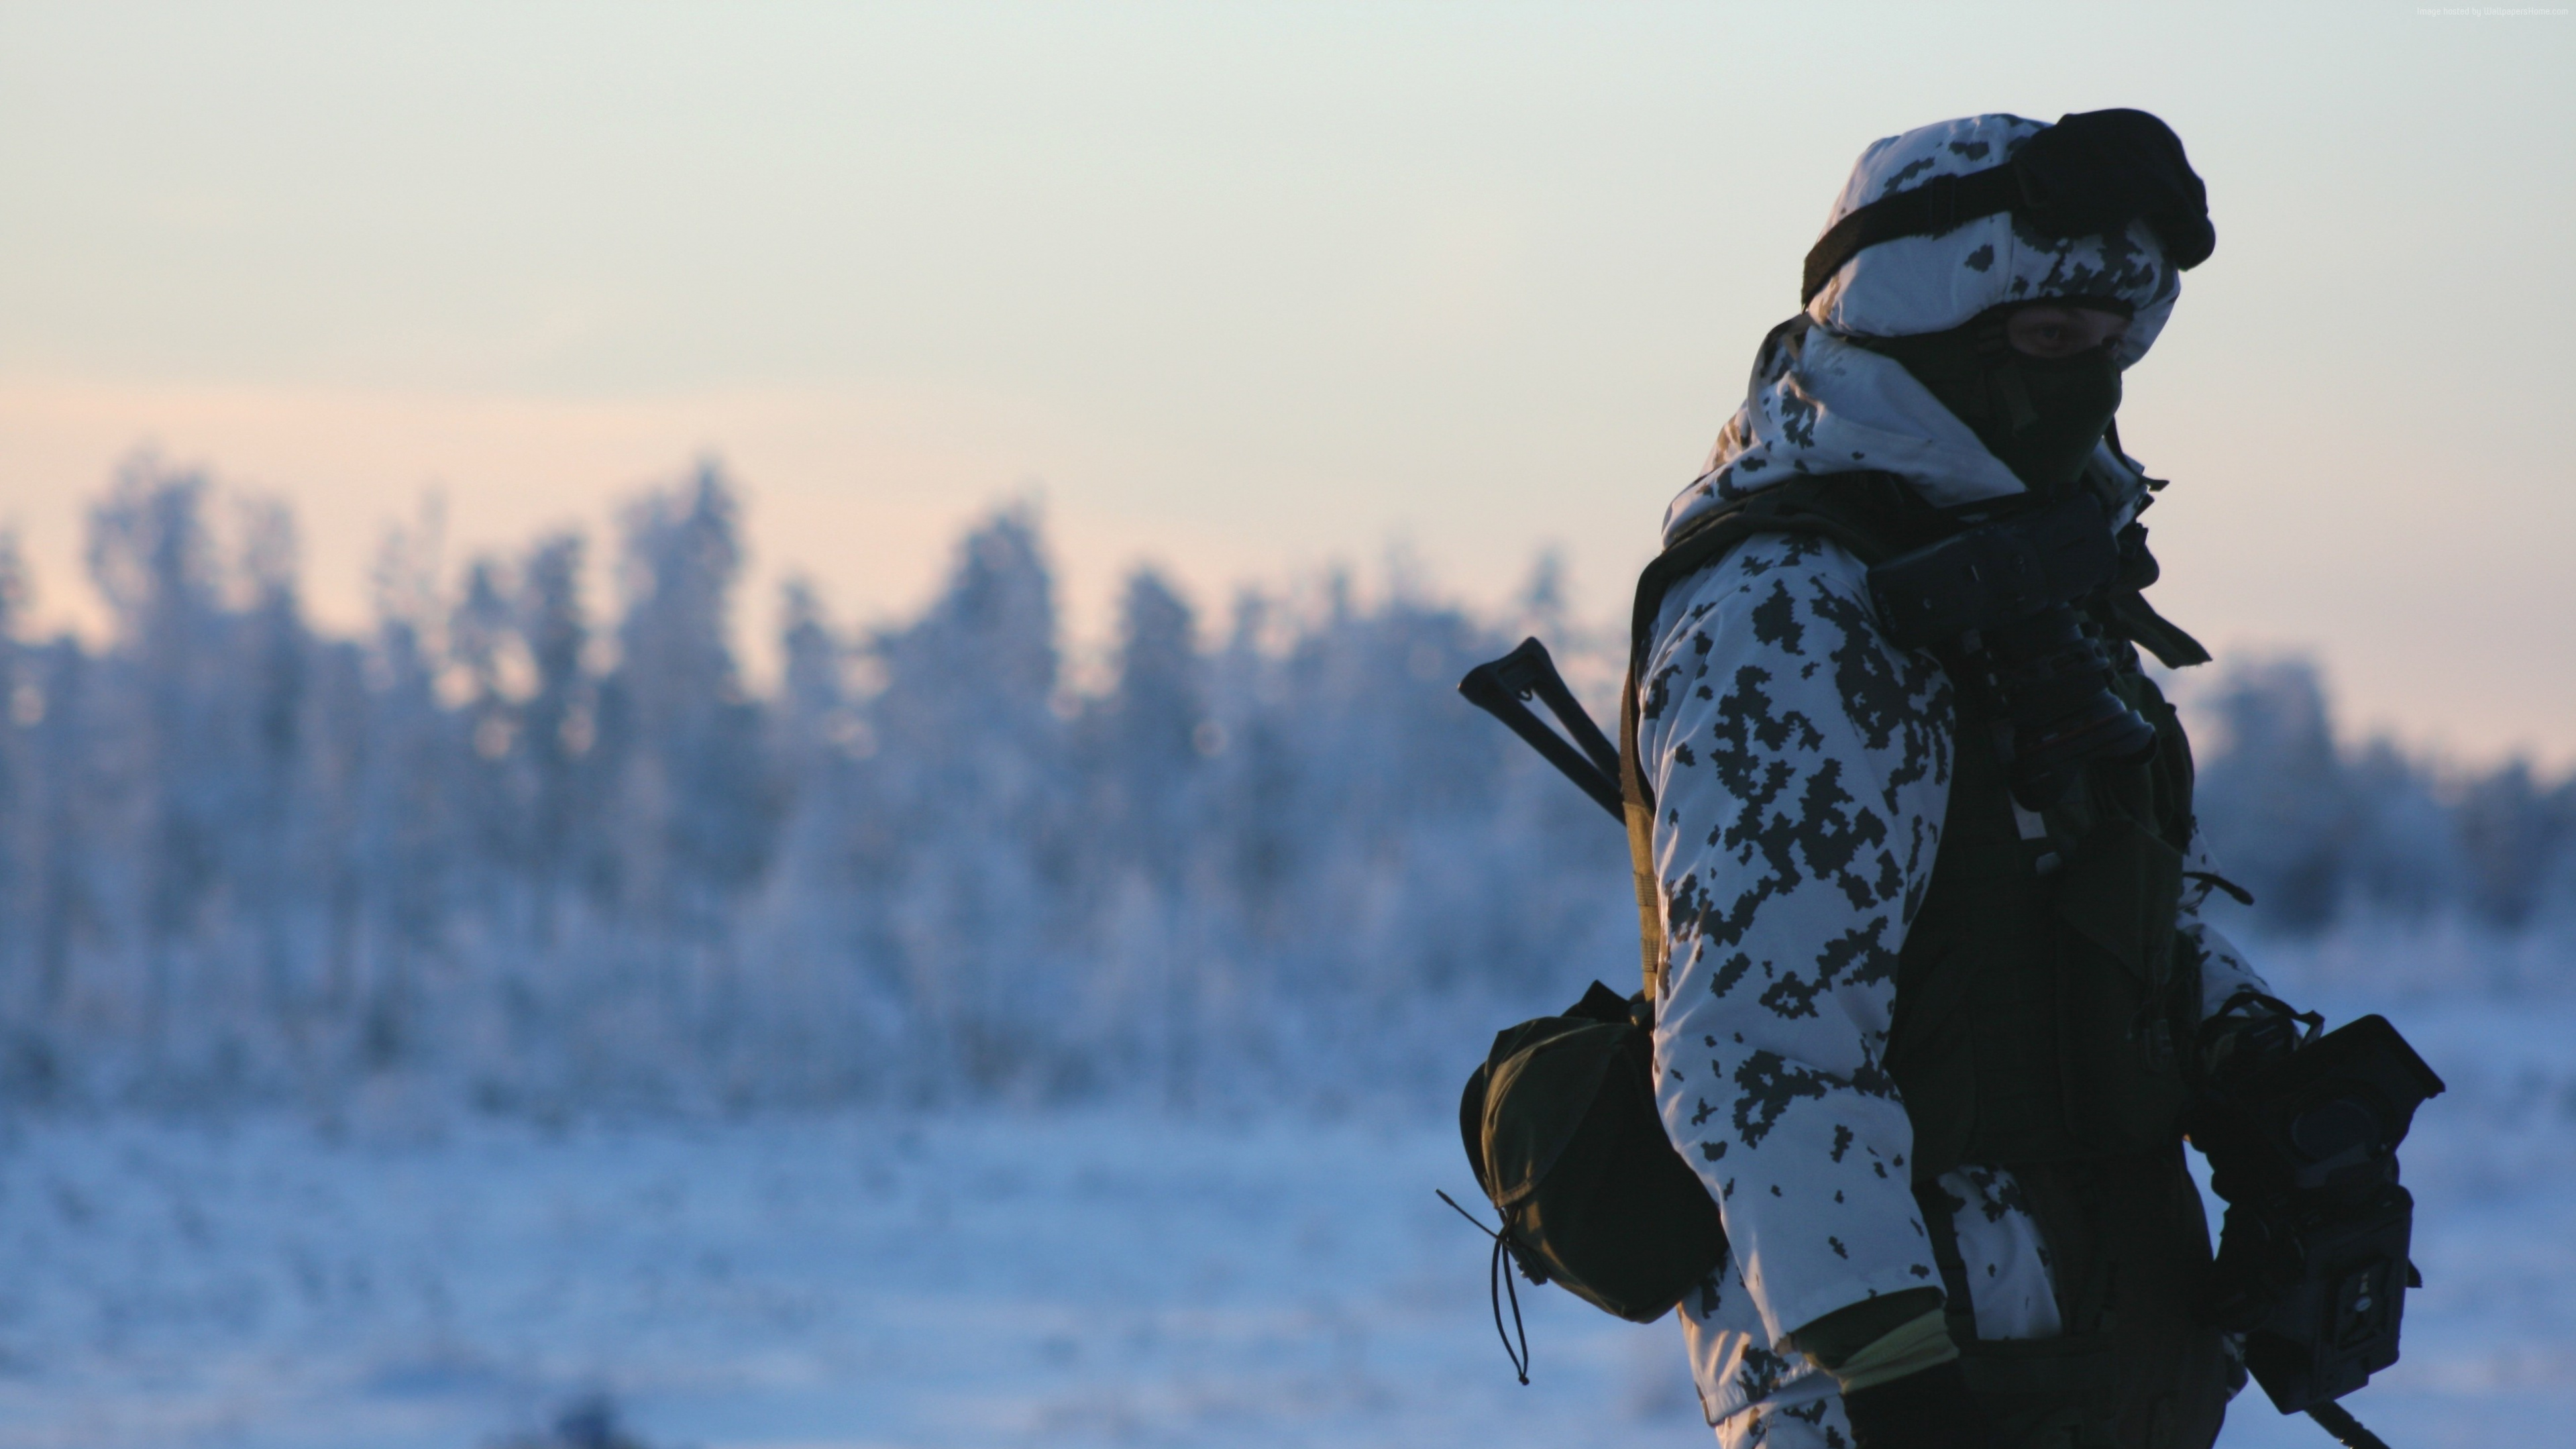 Soldat, Schnee, Winter, Einfrieren, Arktis. Wallpaper in 3840x2160 Resolution